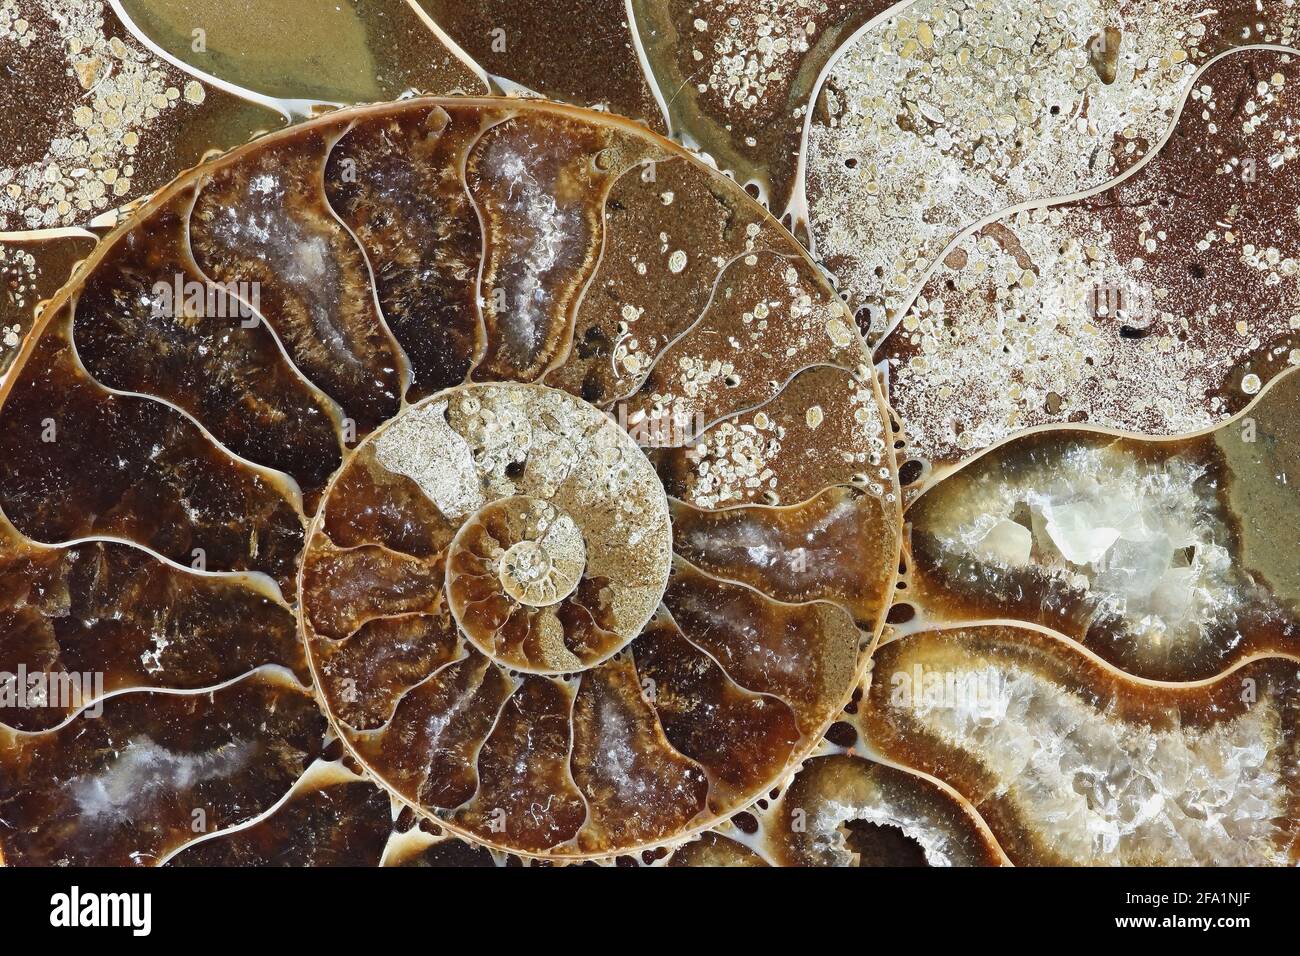 Il s'agit de mollusques fossiles préhistoriques appelé ammonite, une espèce d'animal marin. Banque D'Images